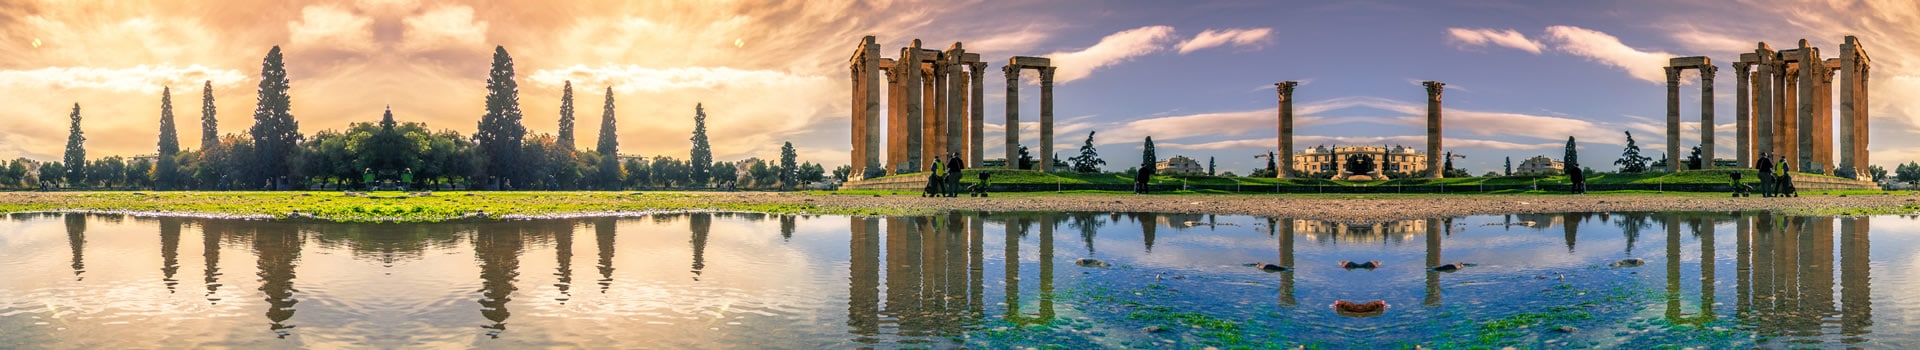 Sevilha - Atenas